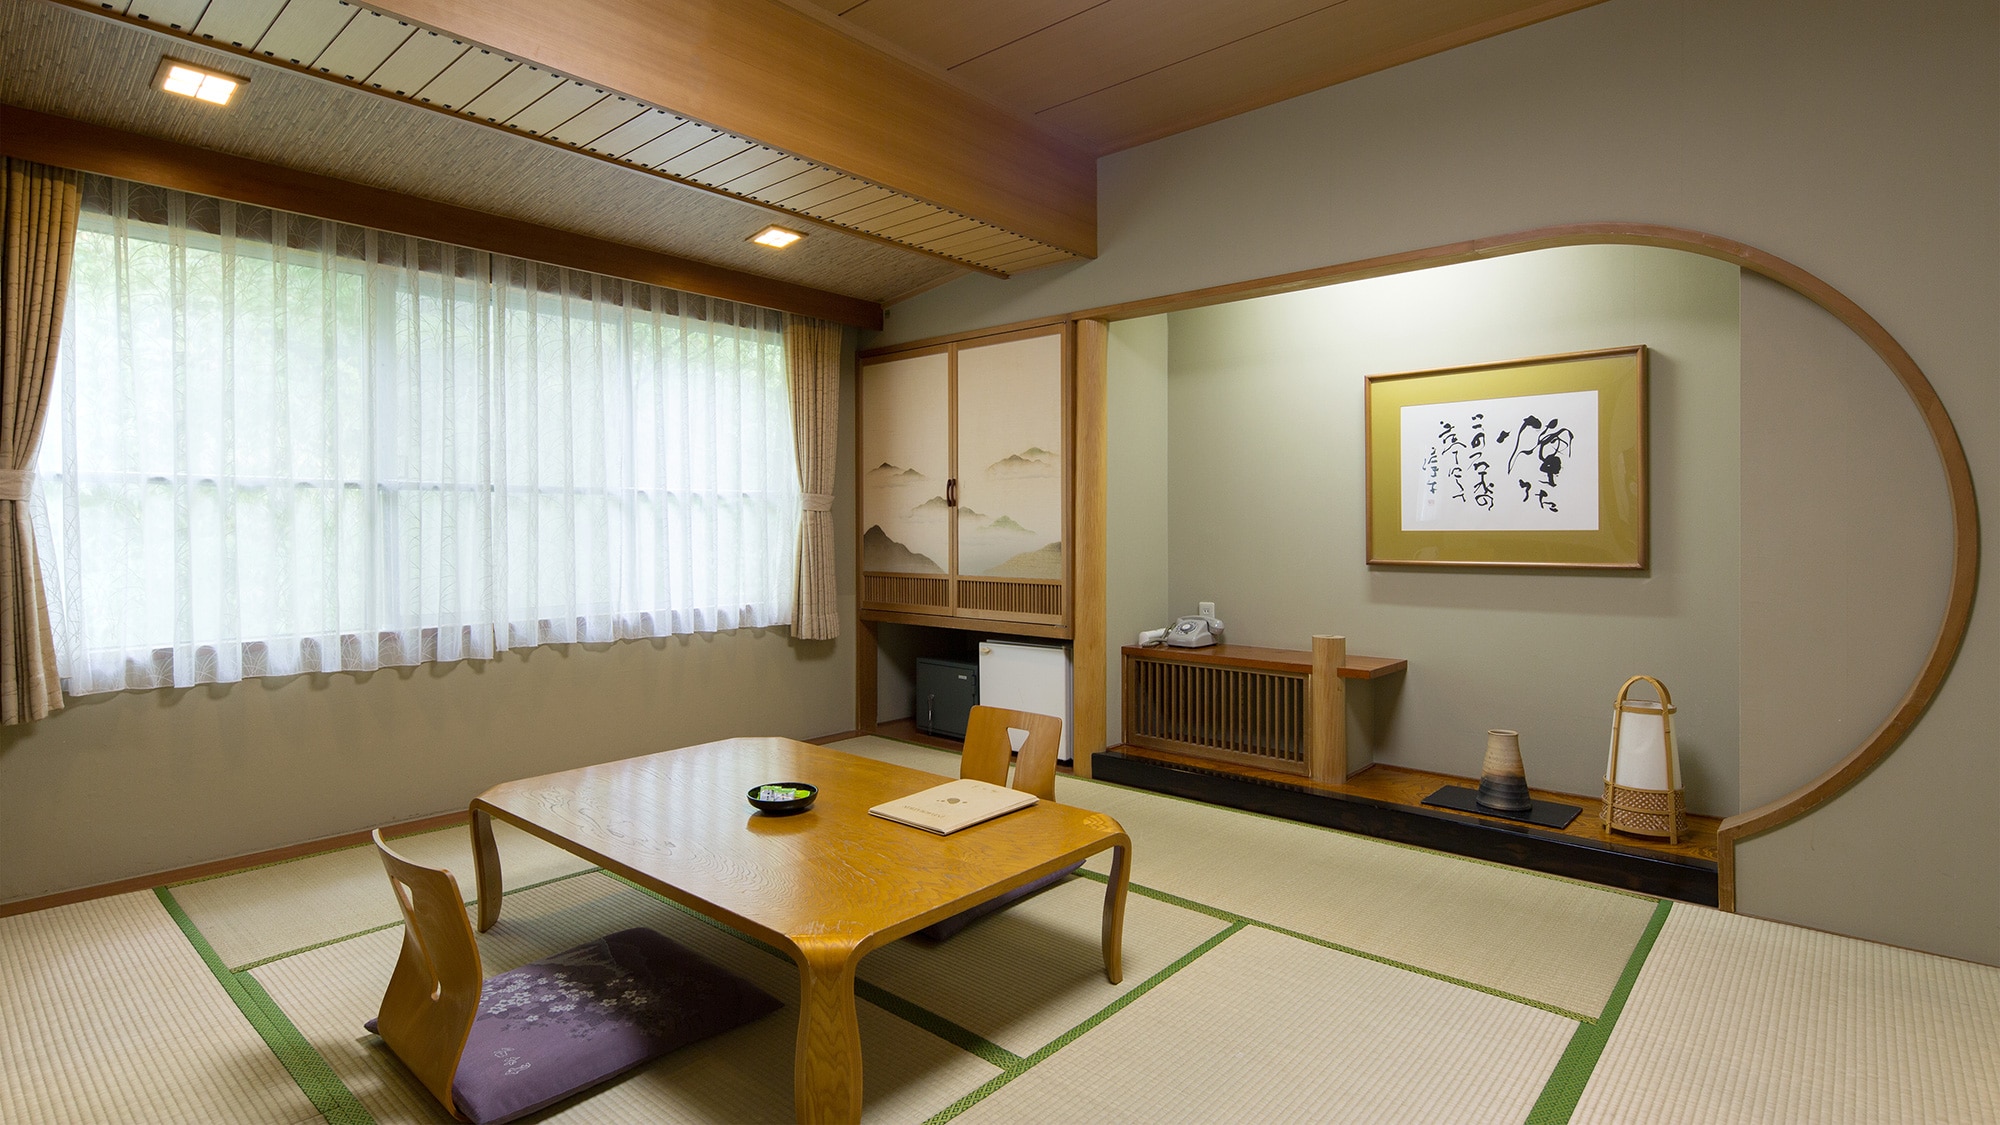 【일본식 방】 순 일본식 구조의 일본식 방. 이불로 쉬고 싶은 분에게 추천하는 방입니다.